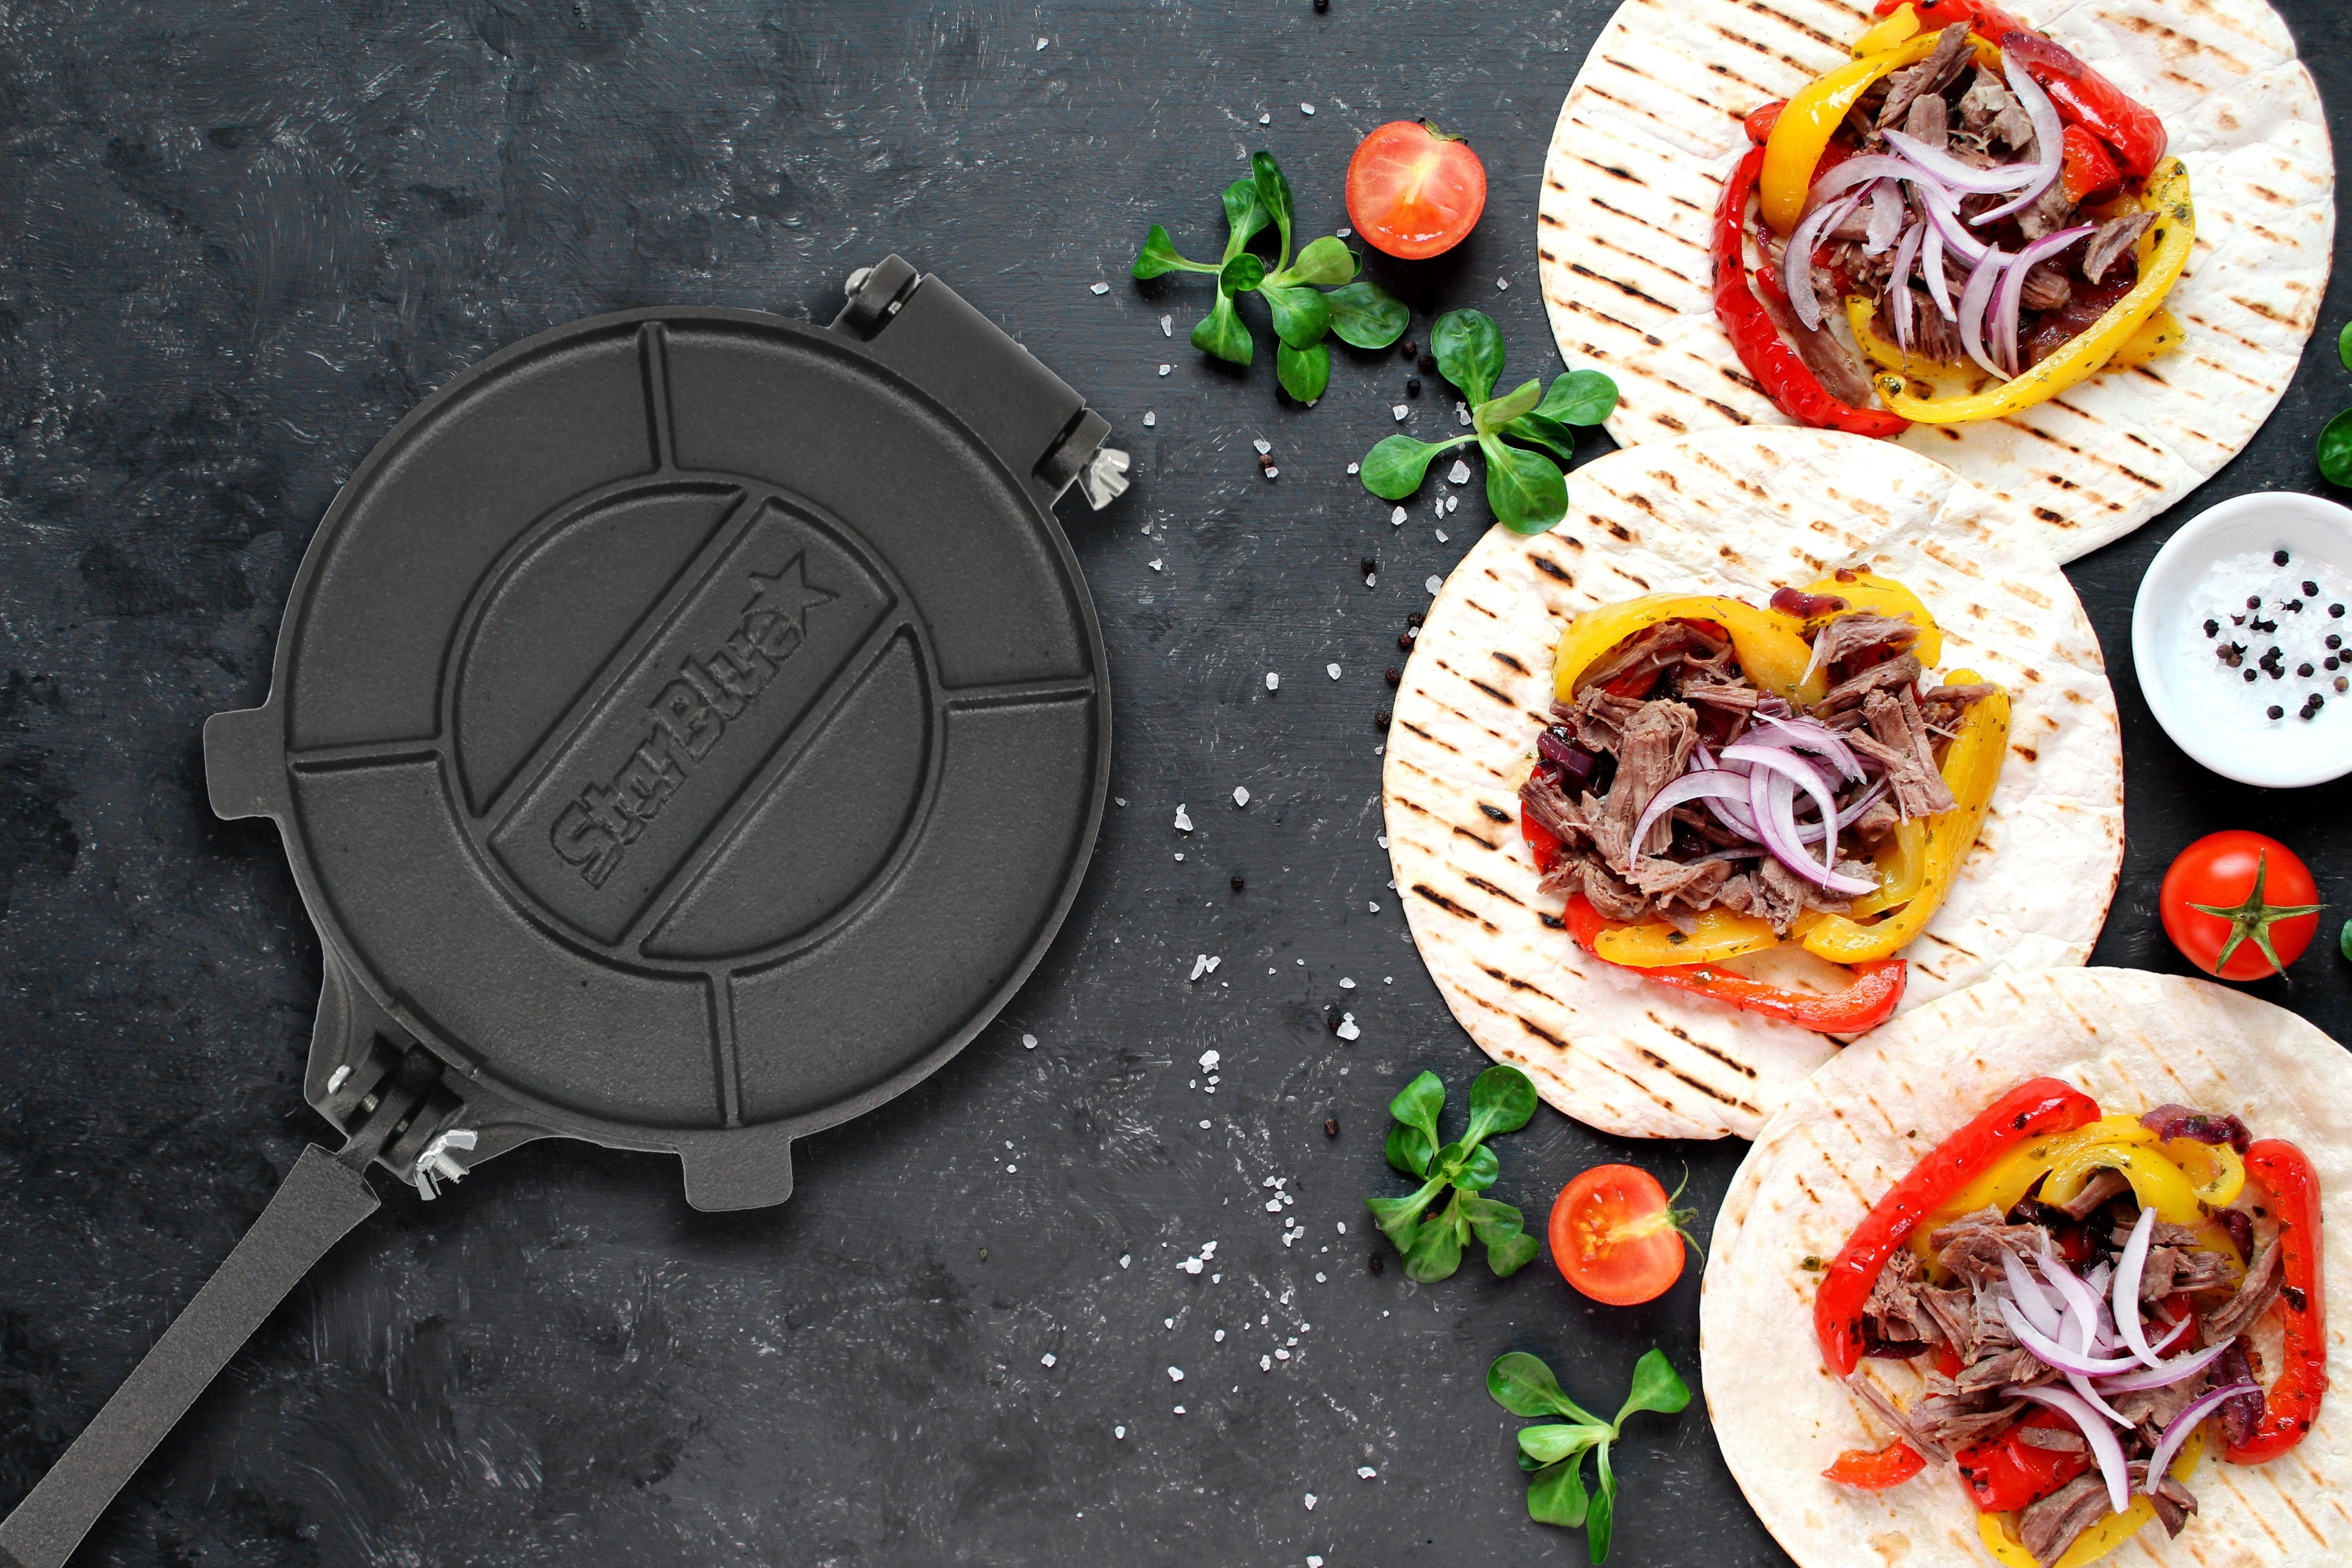  Oro Import Iron Tortilla Press Heavy Duty Burrito Maker  Tortilladora (8 x 8 Inches, Red): Home & Kitchen